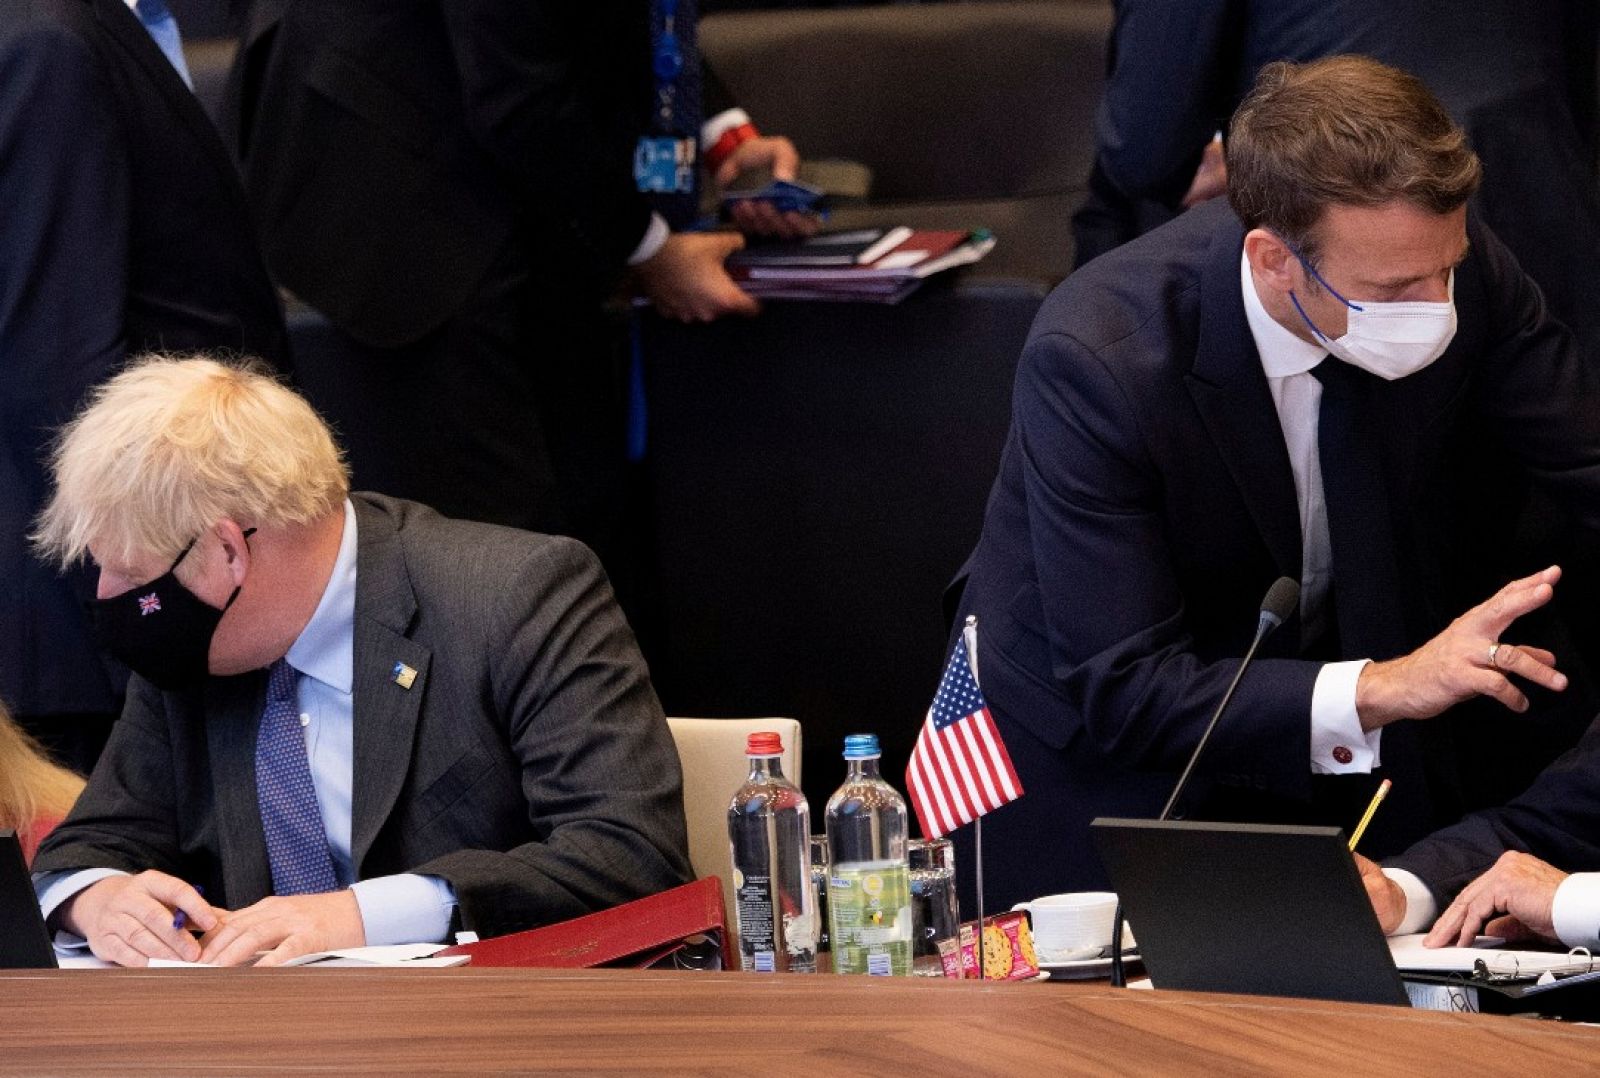 Una imagen del primer ministro británico, Boris Johnson, cerca del presidente francés, Emmanuel Macron, durante la cumbre de la OTAN el 14 de junio de 2021 en Bruselas, Bélgica.